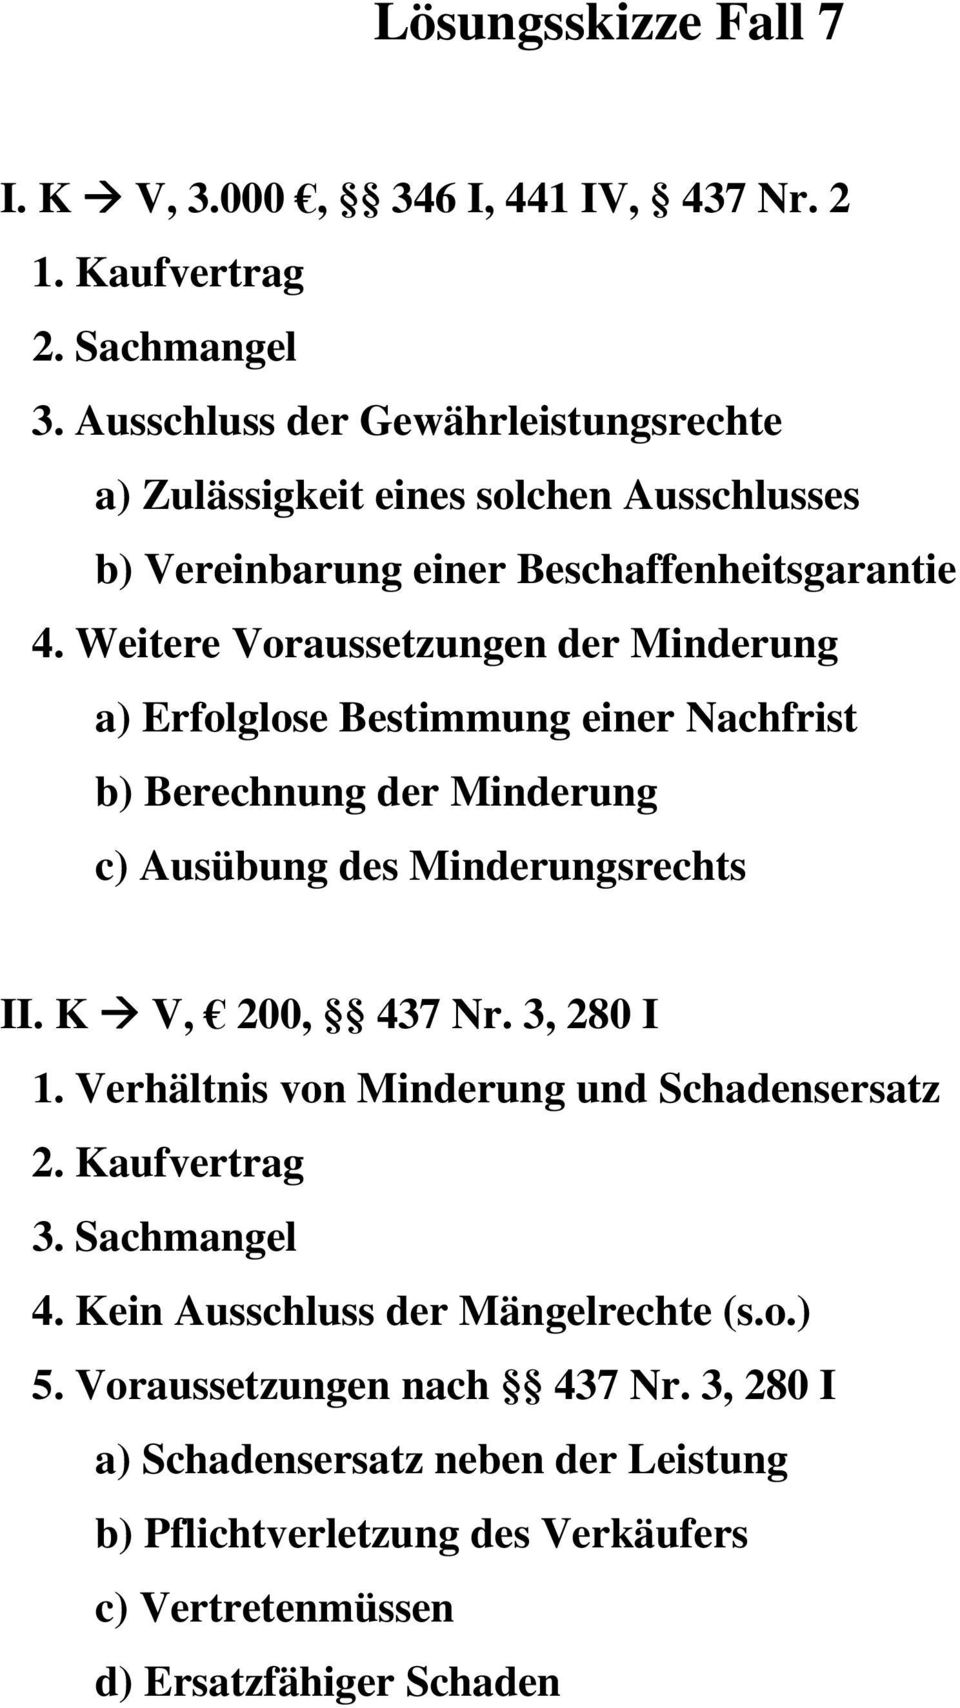 Weitere Voraussetzungen der Minderung a) Erfolglose Bestimmung einer Nachfrist b) Berechnung der Minderung c) Ausübung des Minderungsrechts II. K V, 200, 437 Nr.